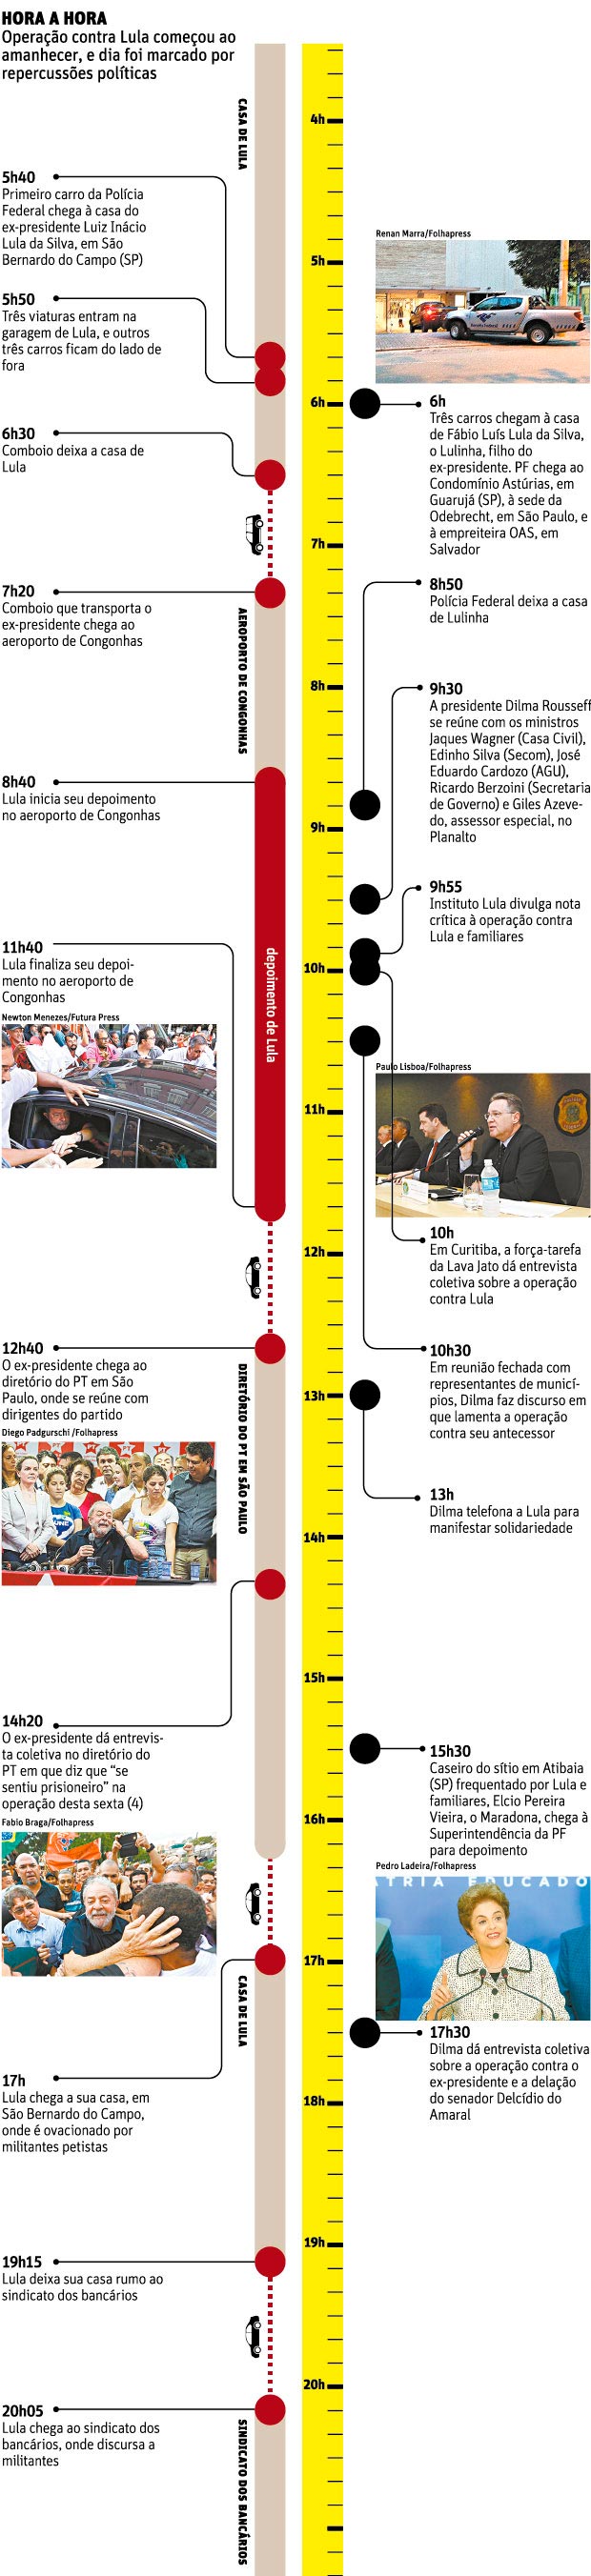 Hora a hora - Cronologia do depoimento de Lula